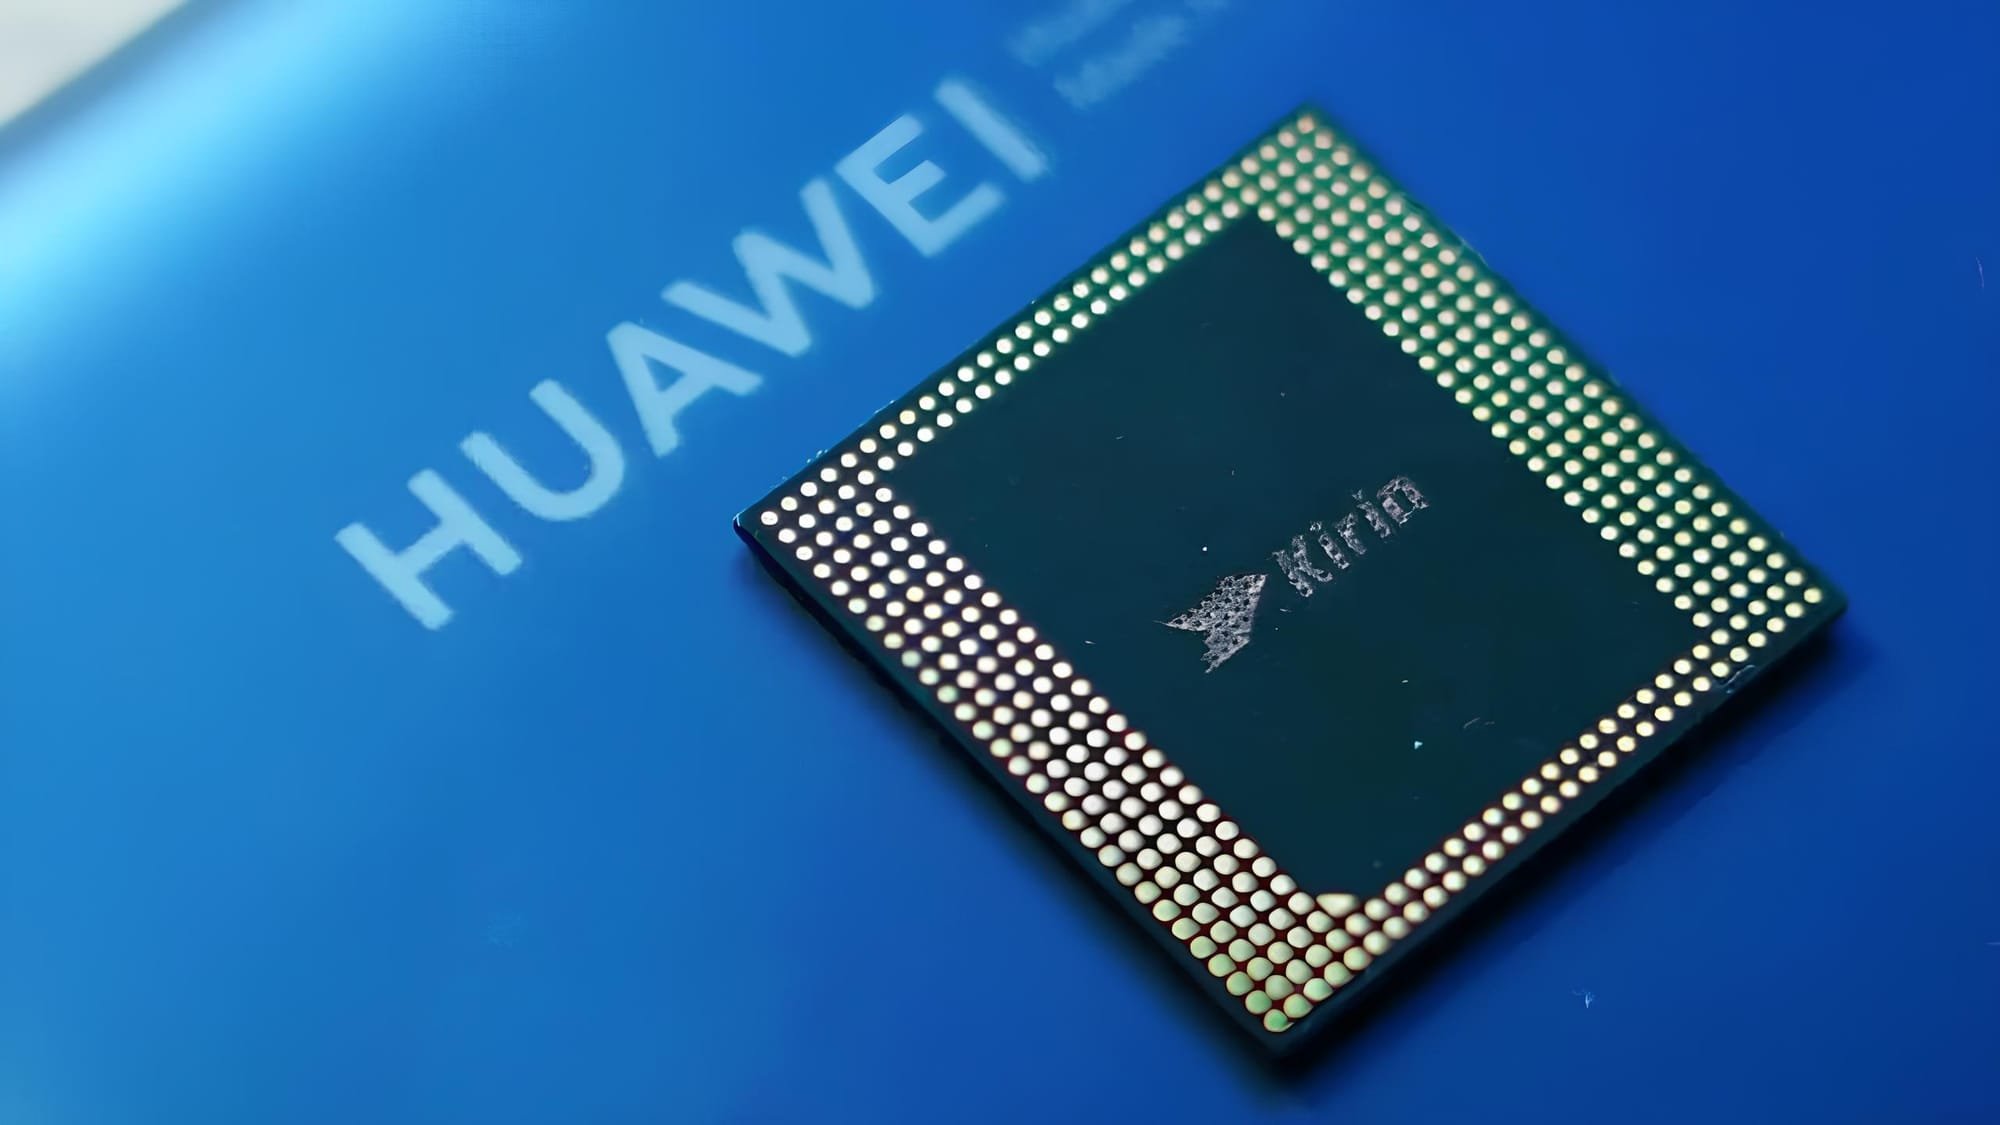 Il processore Kirin della serie Huawei Mate 70 ha raggiunto un punteggio superiore ad 1 milione di punti su AnTuTu